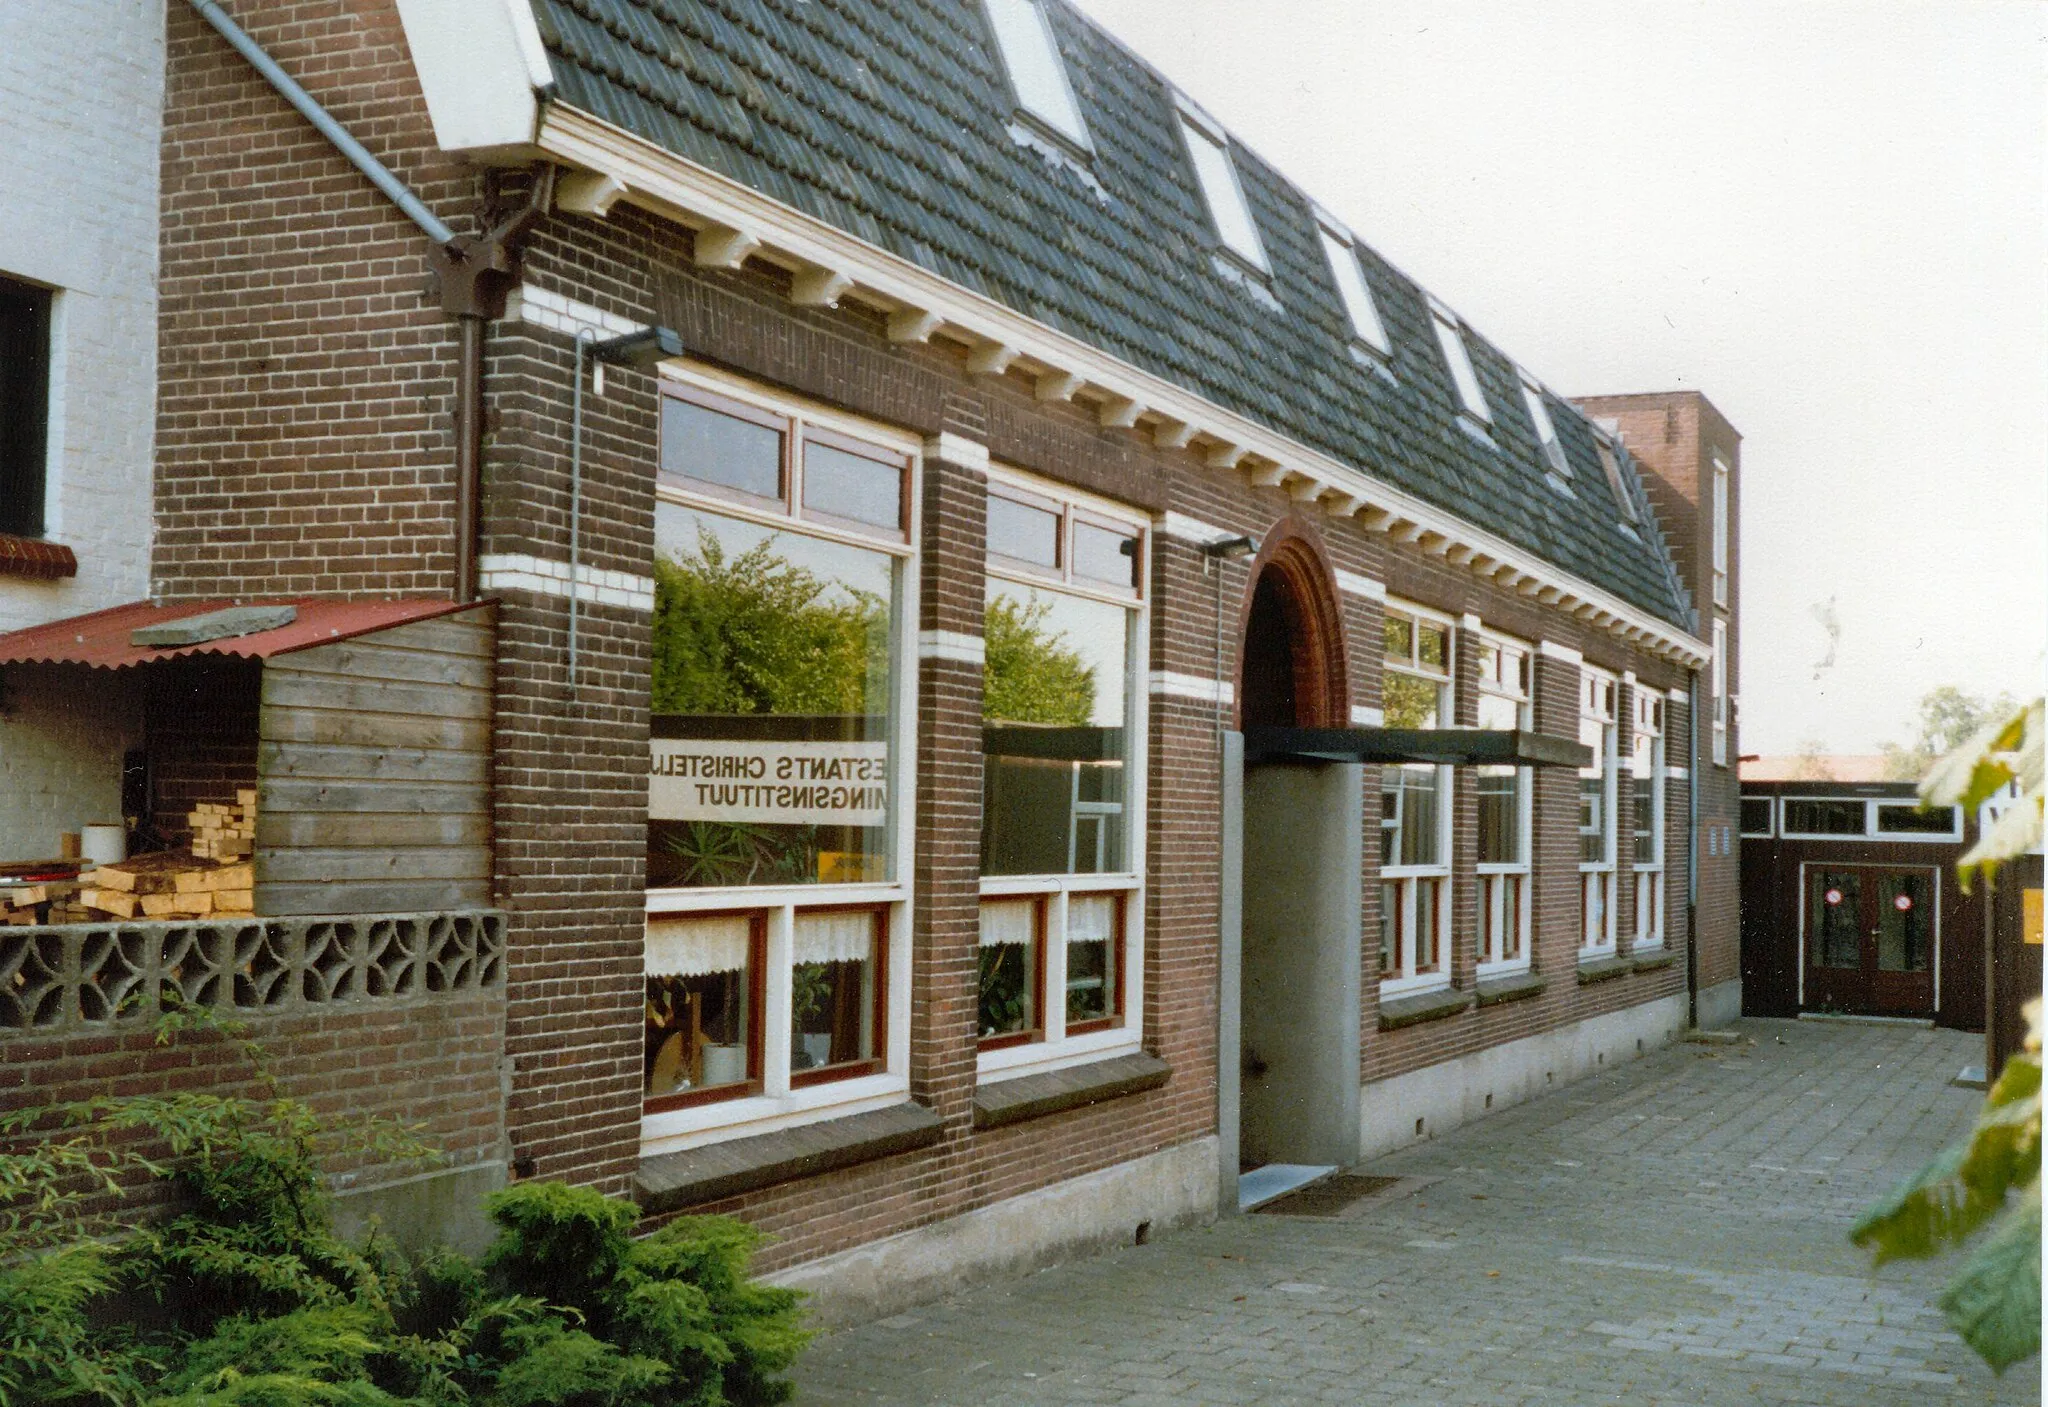 Photo showing: Voormalige Christelijke Lagere School in Rijsoord waar op 15 mei 1940 de capitulatieovereenkomst werd getekend